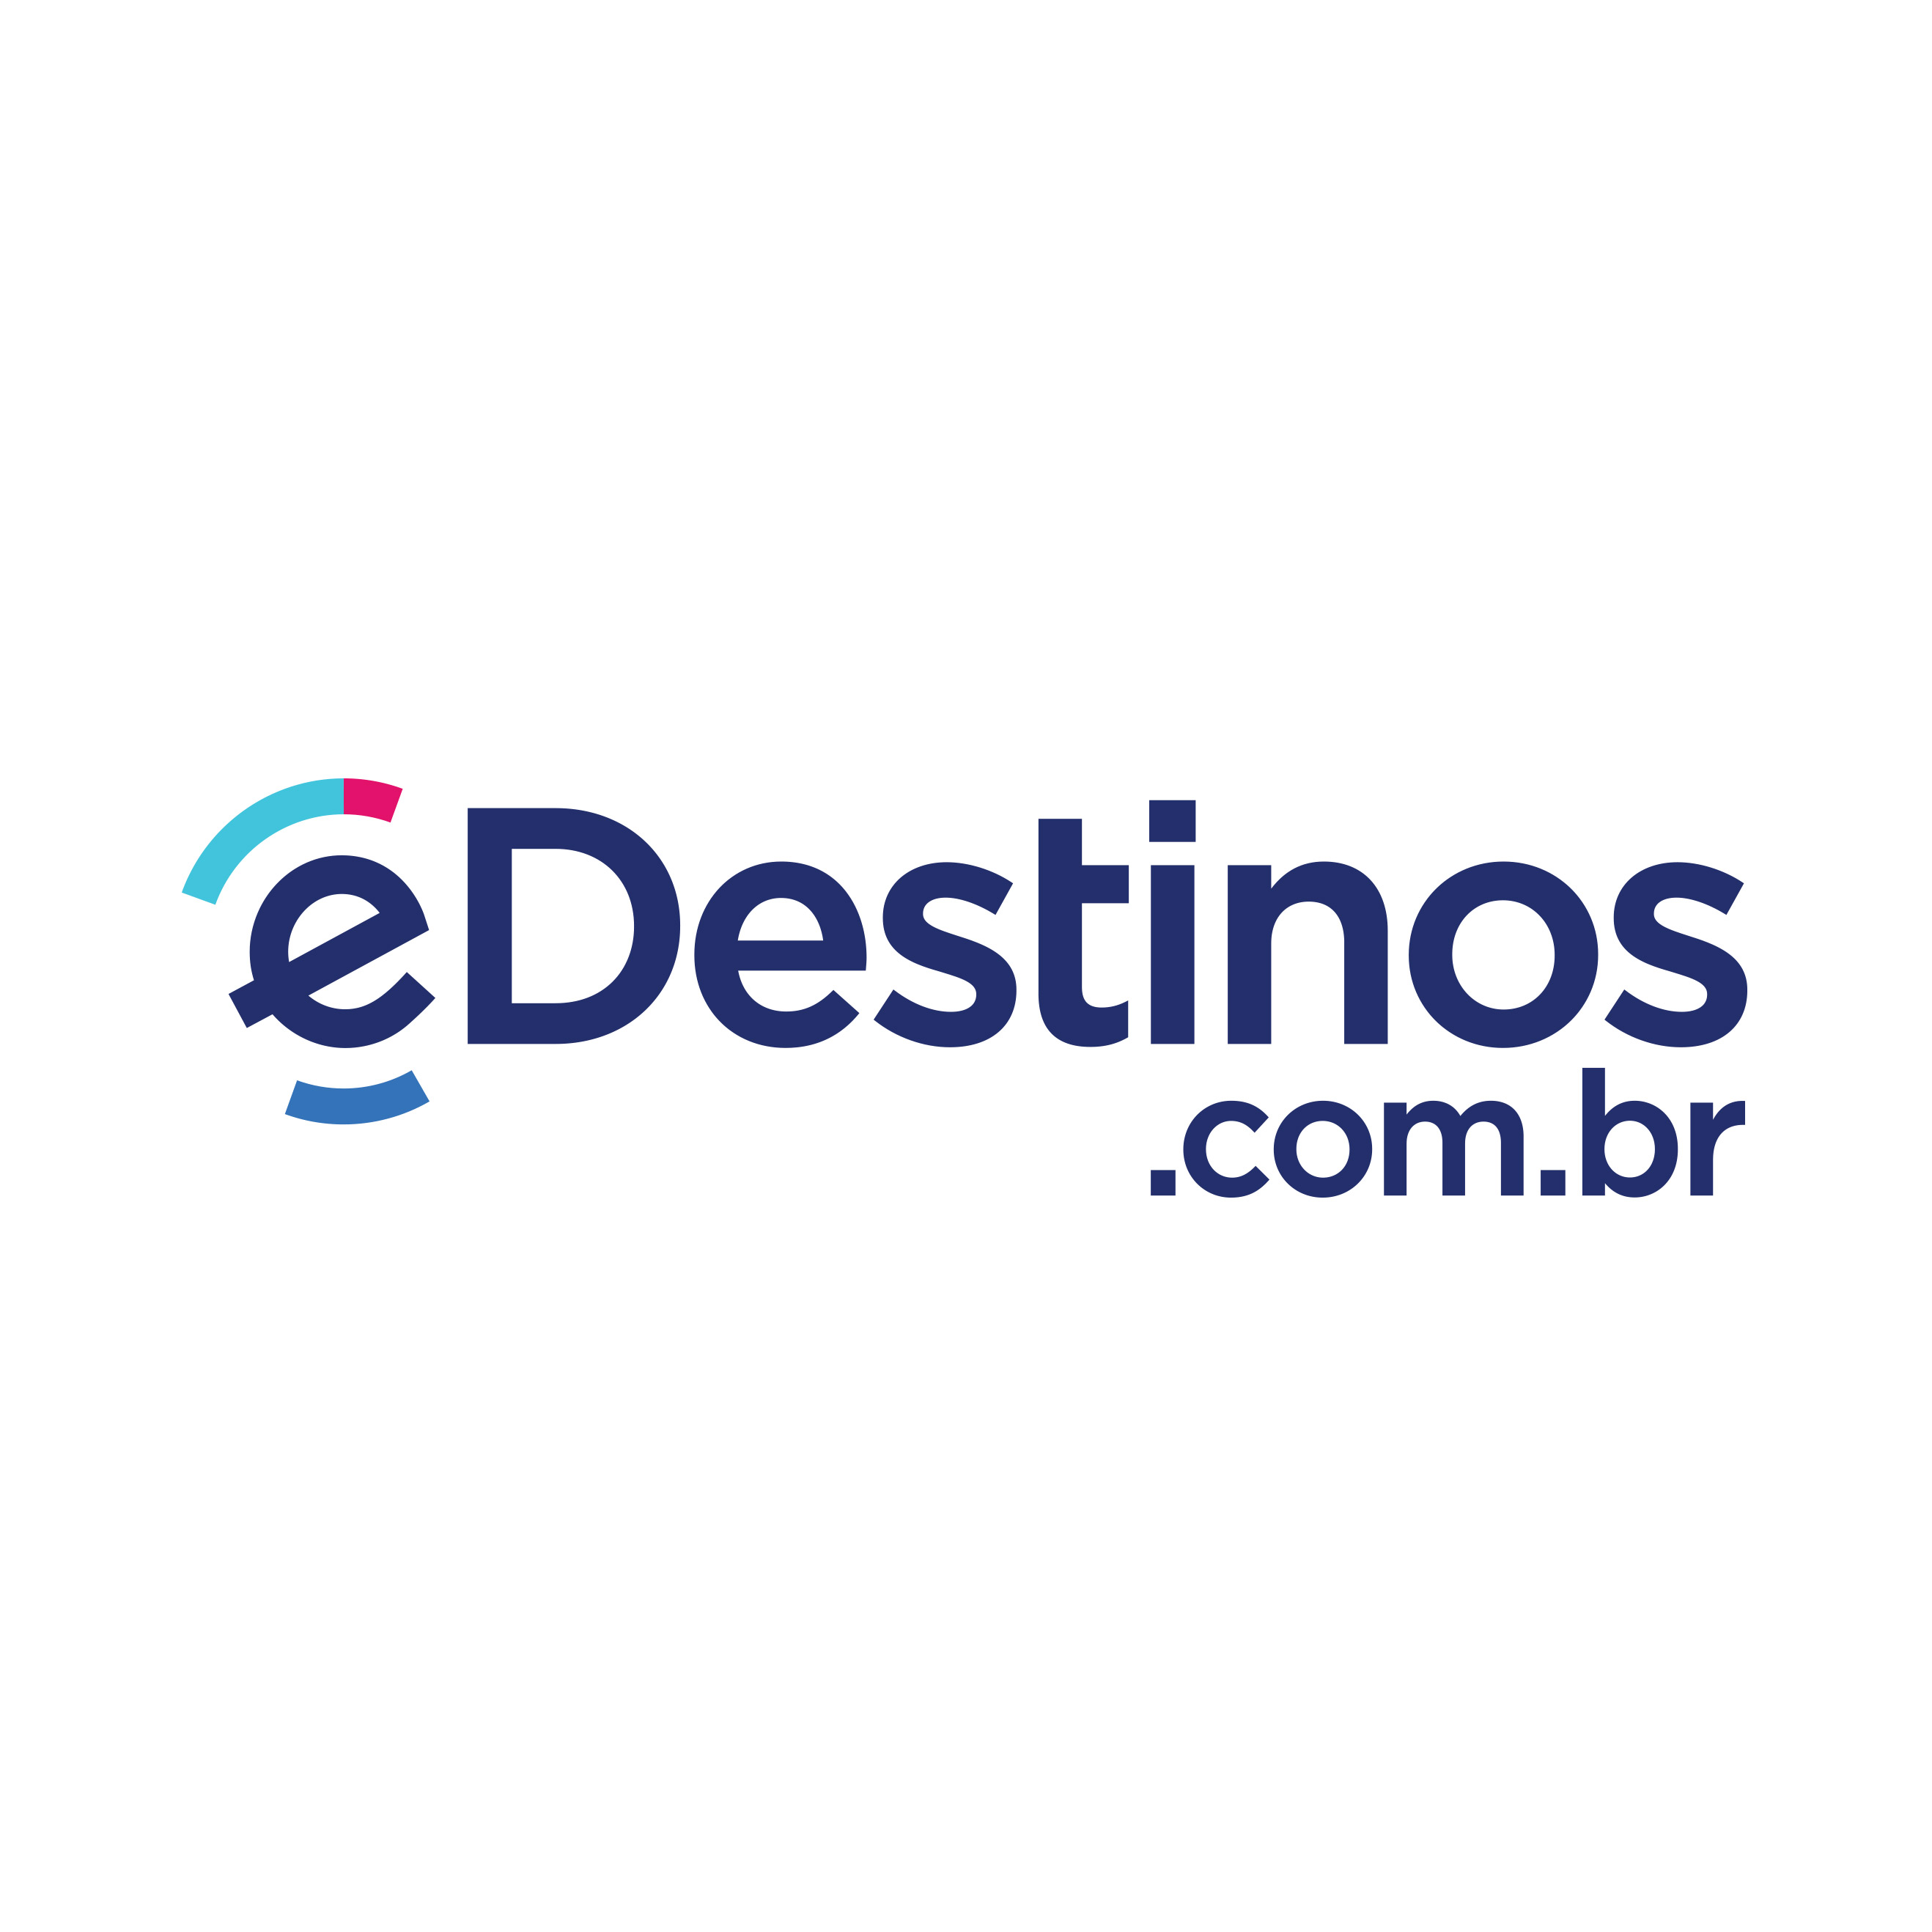 (c) Edestinos.com.br